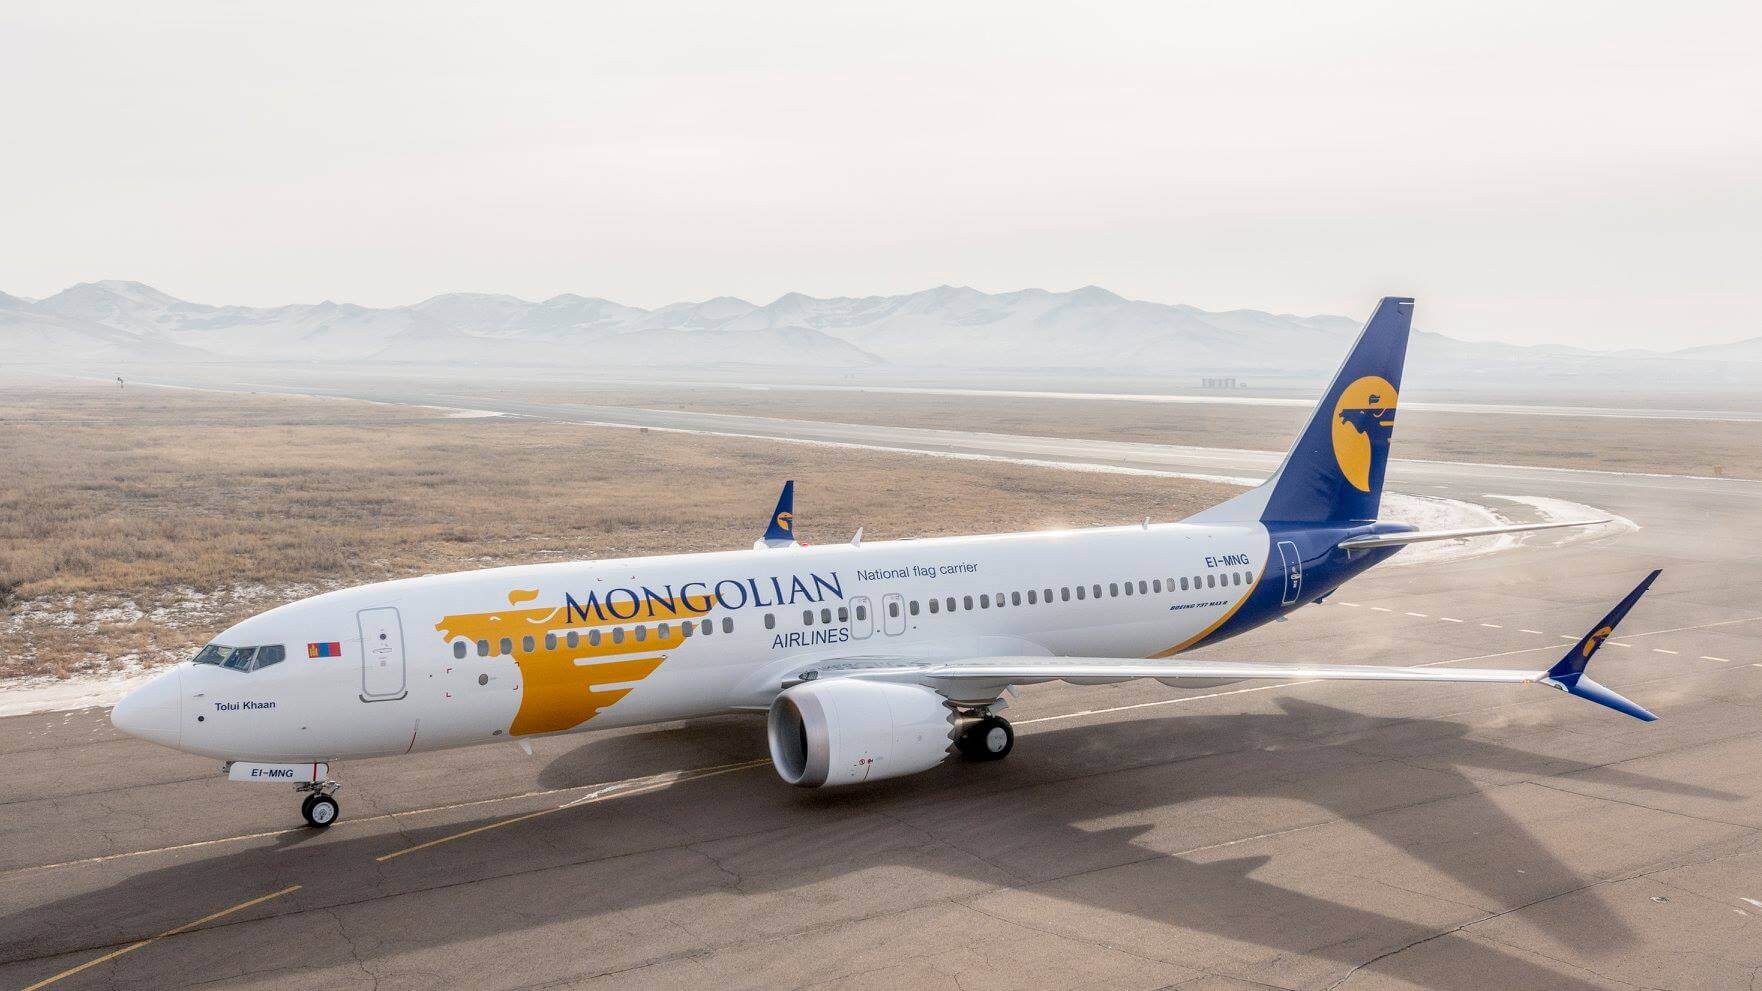 Miat mongolian airlines содержание а также история [ править ]